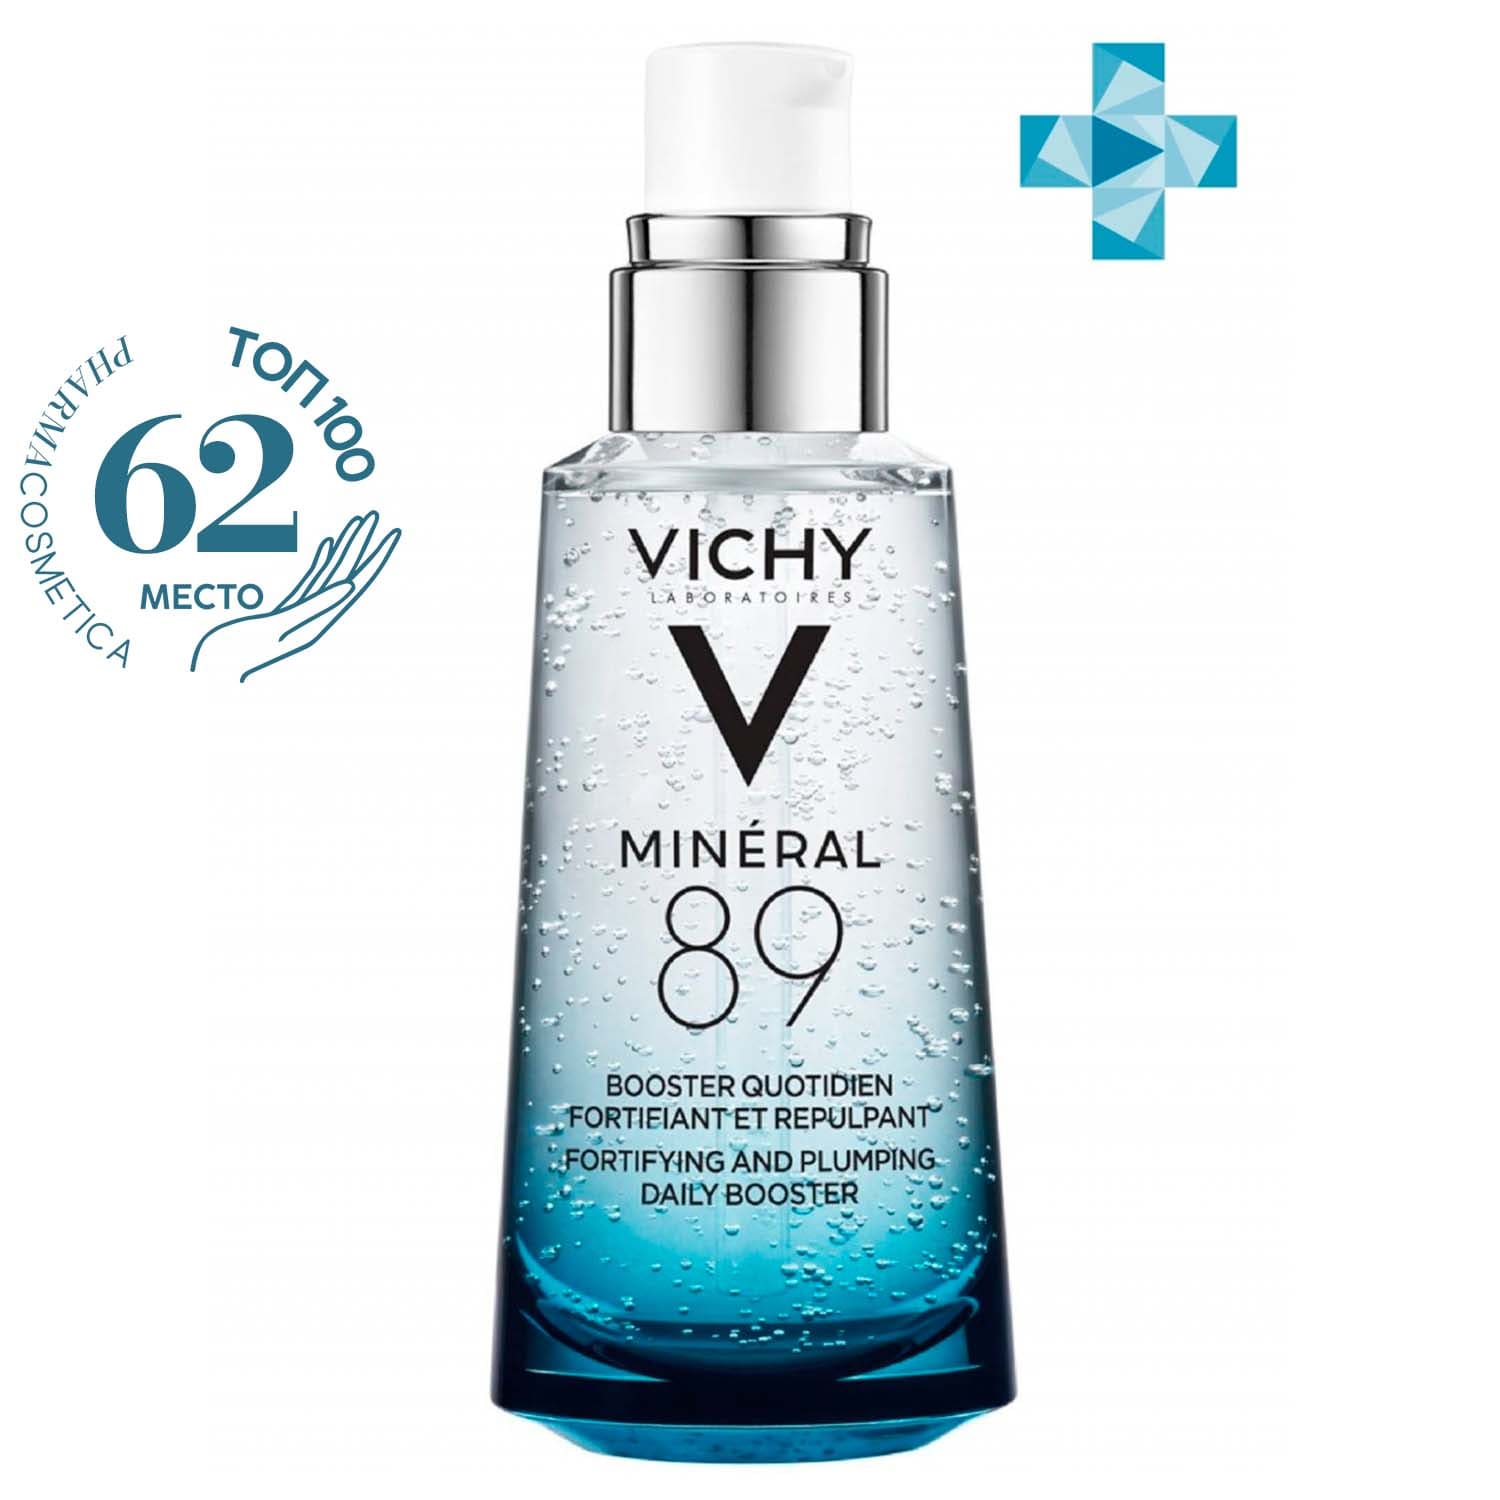 Vichy Ежедневный гель-сыворотка для кожи, подверженной агрессивным внешним воздействиям, 50 мл (Vichy, Mineral 89)